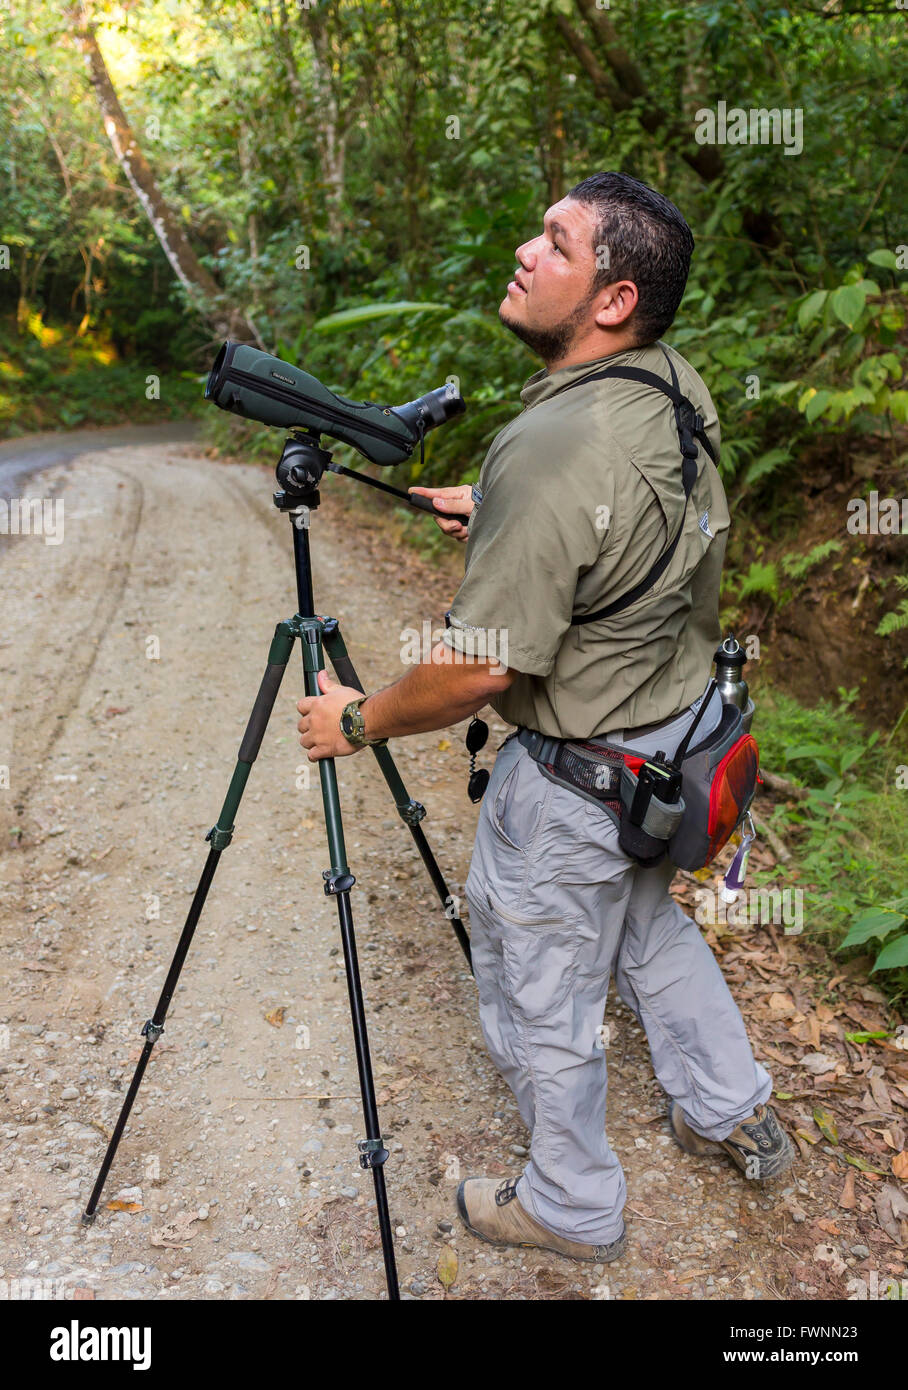 Die Halbinsel OSA, COSTA RICA - Ökotourismus Naturführer mit Spektiv auf Stativ, Wildbeobachtung im Regenwald. Stockfoto